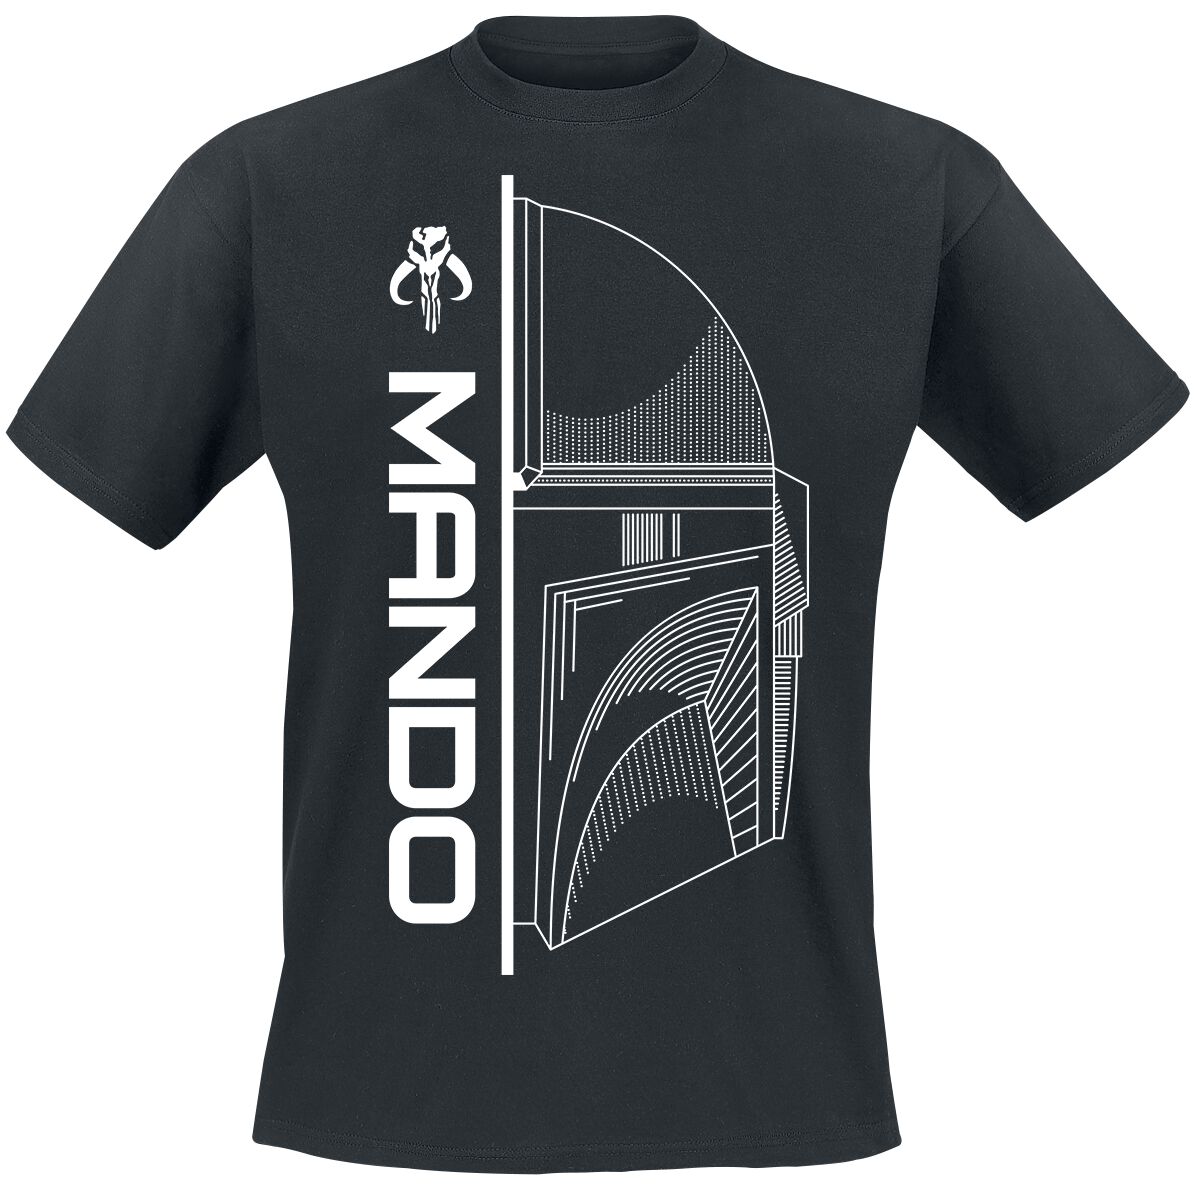 Star Wars T-Shirt - The Mandalorian - Mando - S bis XXL - für Männer - Größe S - schwarz  - EMP exklusives Merchandise!